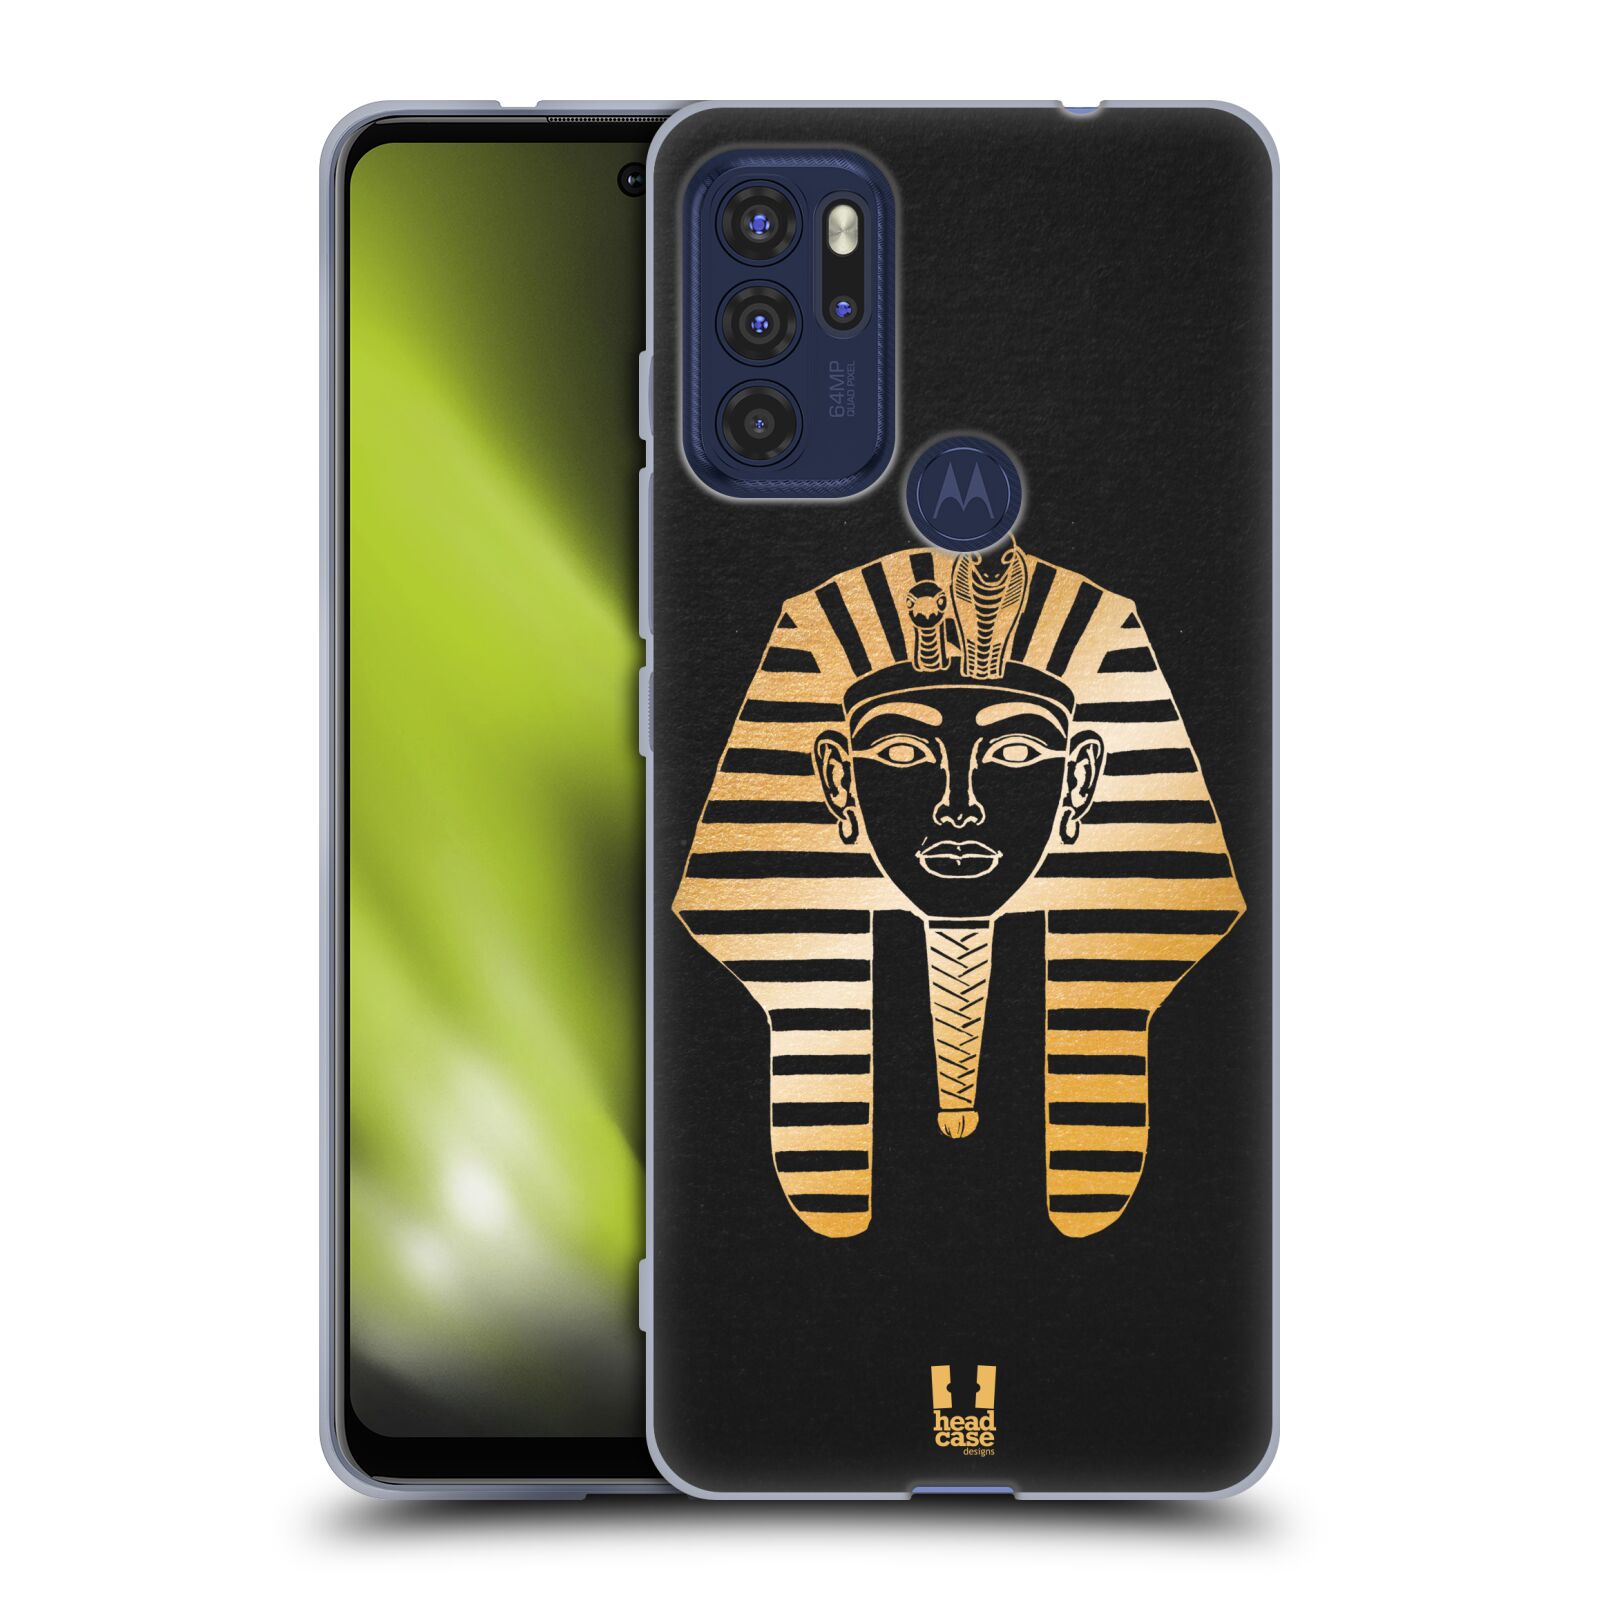 Silikonové pouzdro na mobil Motorola Moto G60s - Head Case - EGYPT FARAON